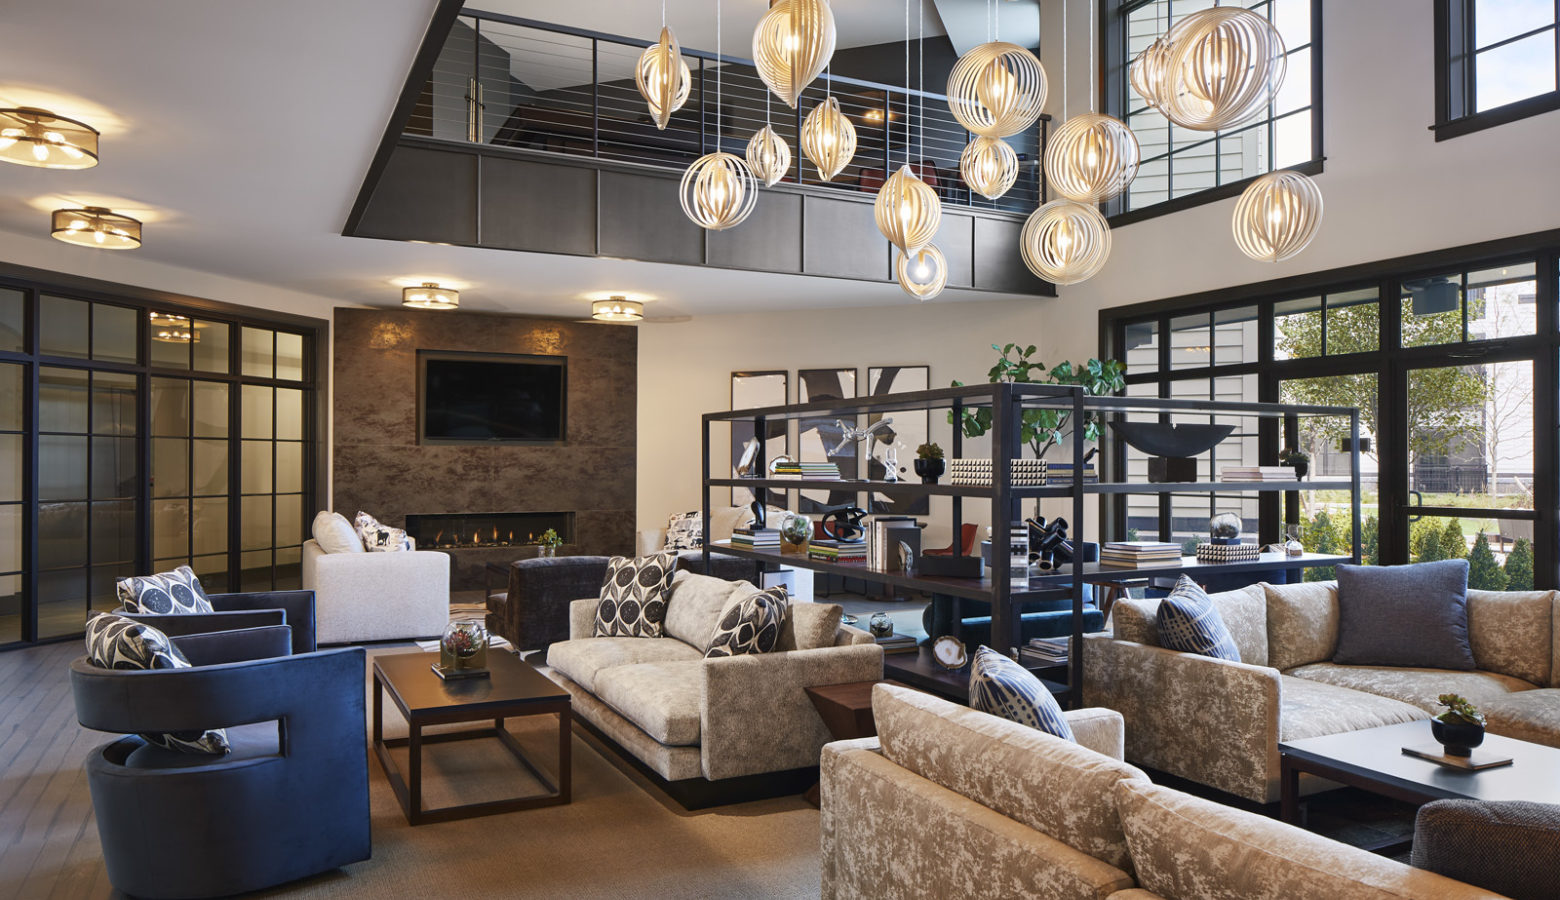 Interior Design for Luxury Multi-Family Apartment Building Common Spaces